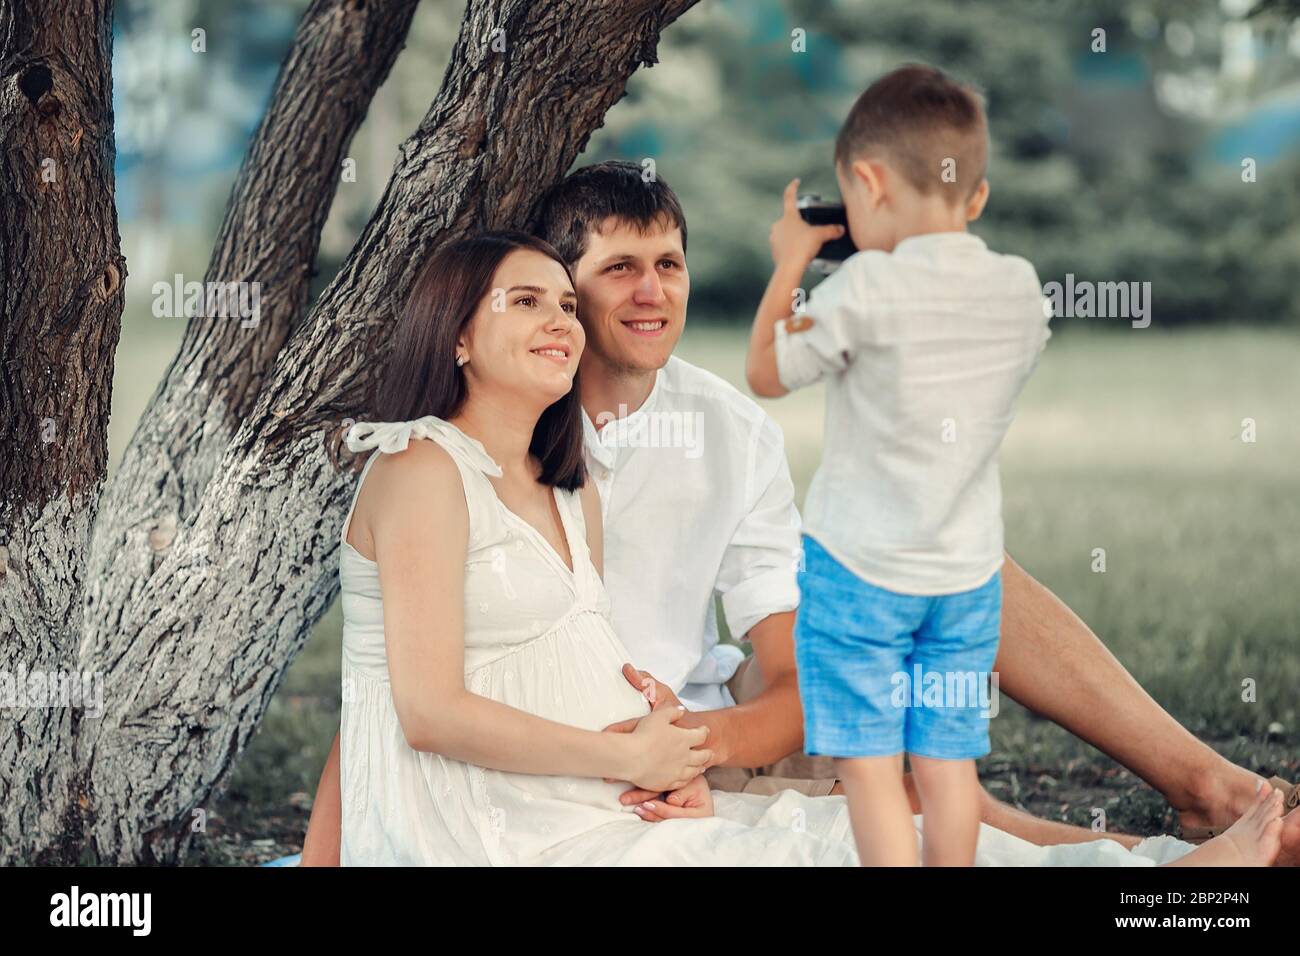 Un giovane fotografo. Il bambino scatta le foto di sua madre e del padre in una giornata estiva sotto un albero. Foto Stock